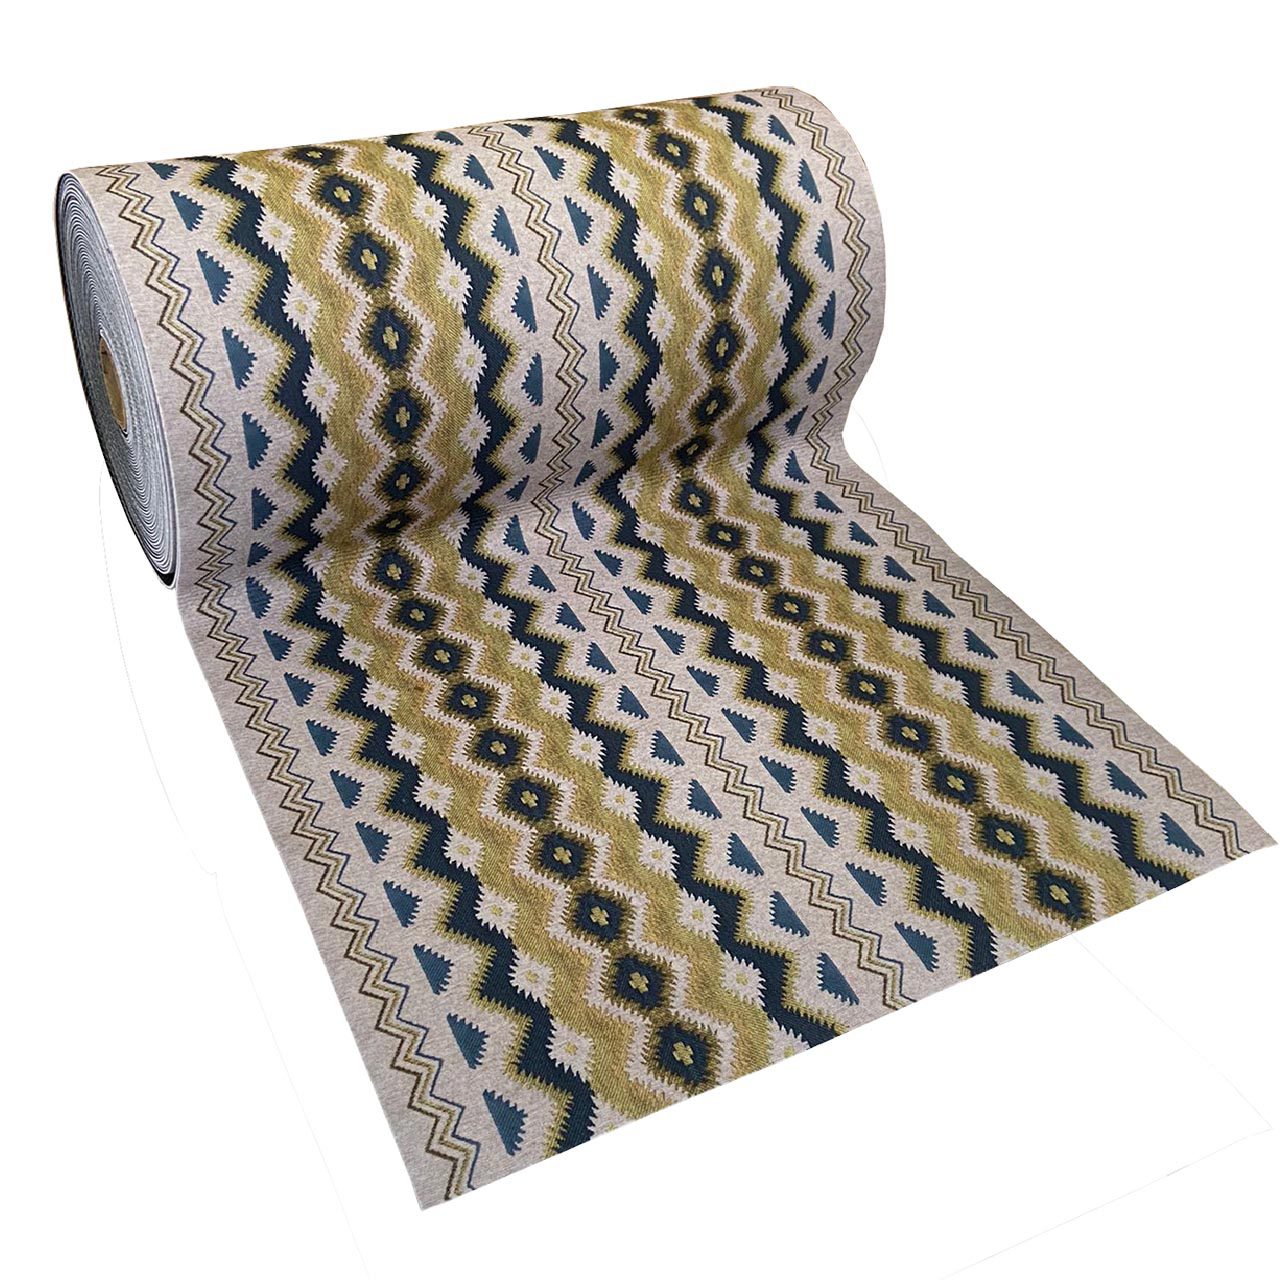 Compre en línea - Base antideslizante para alfombras y moquetas